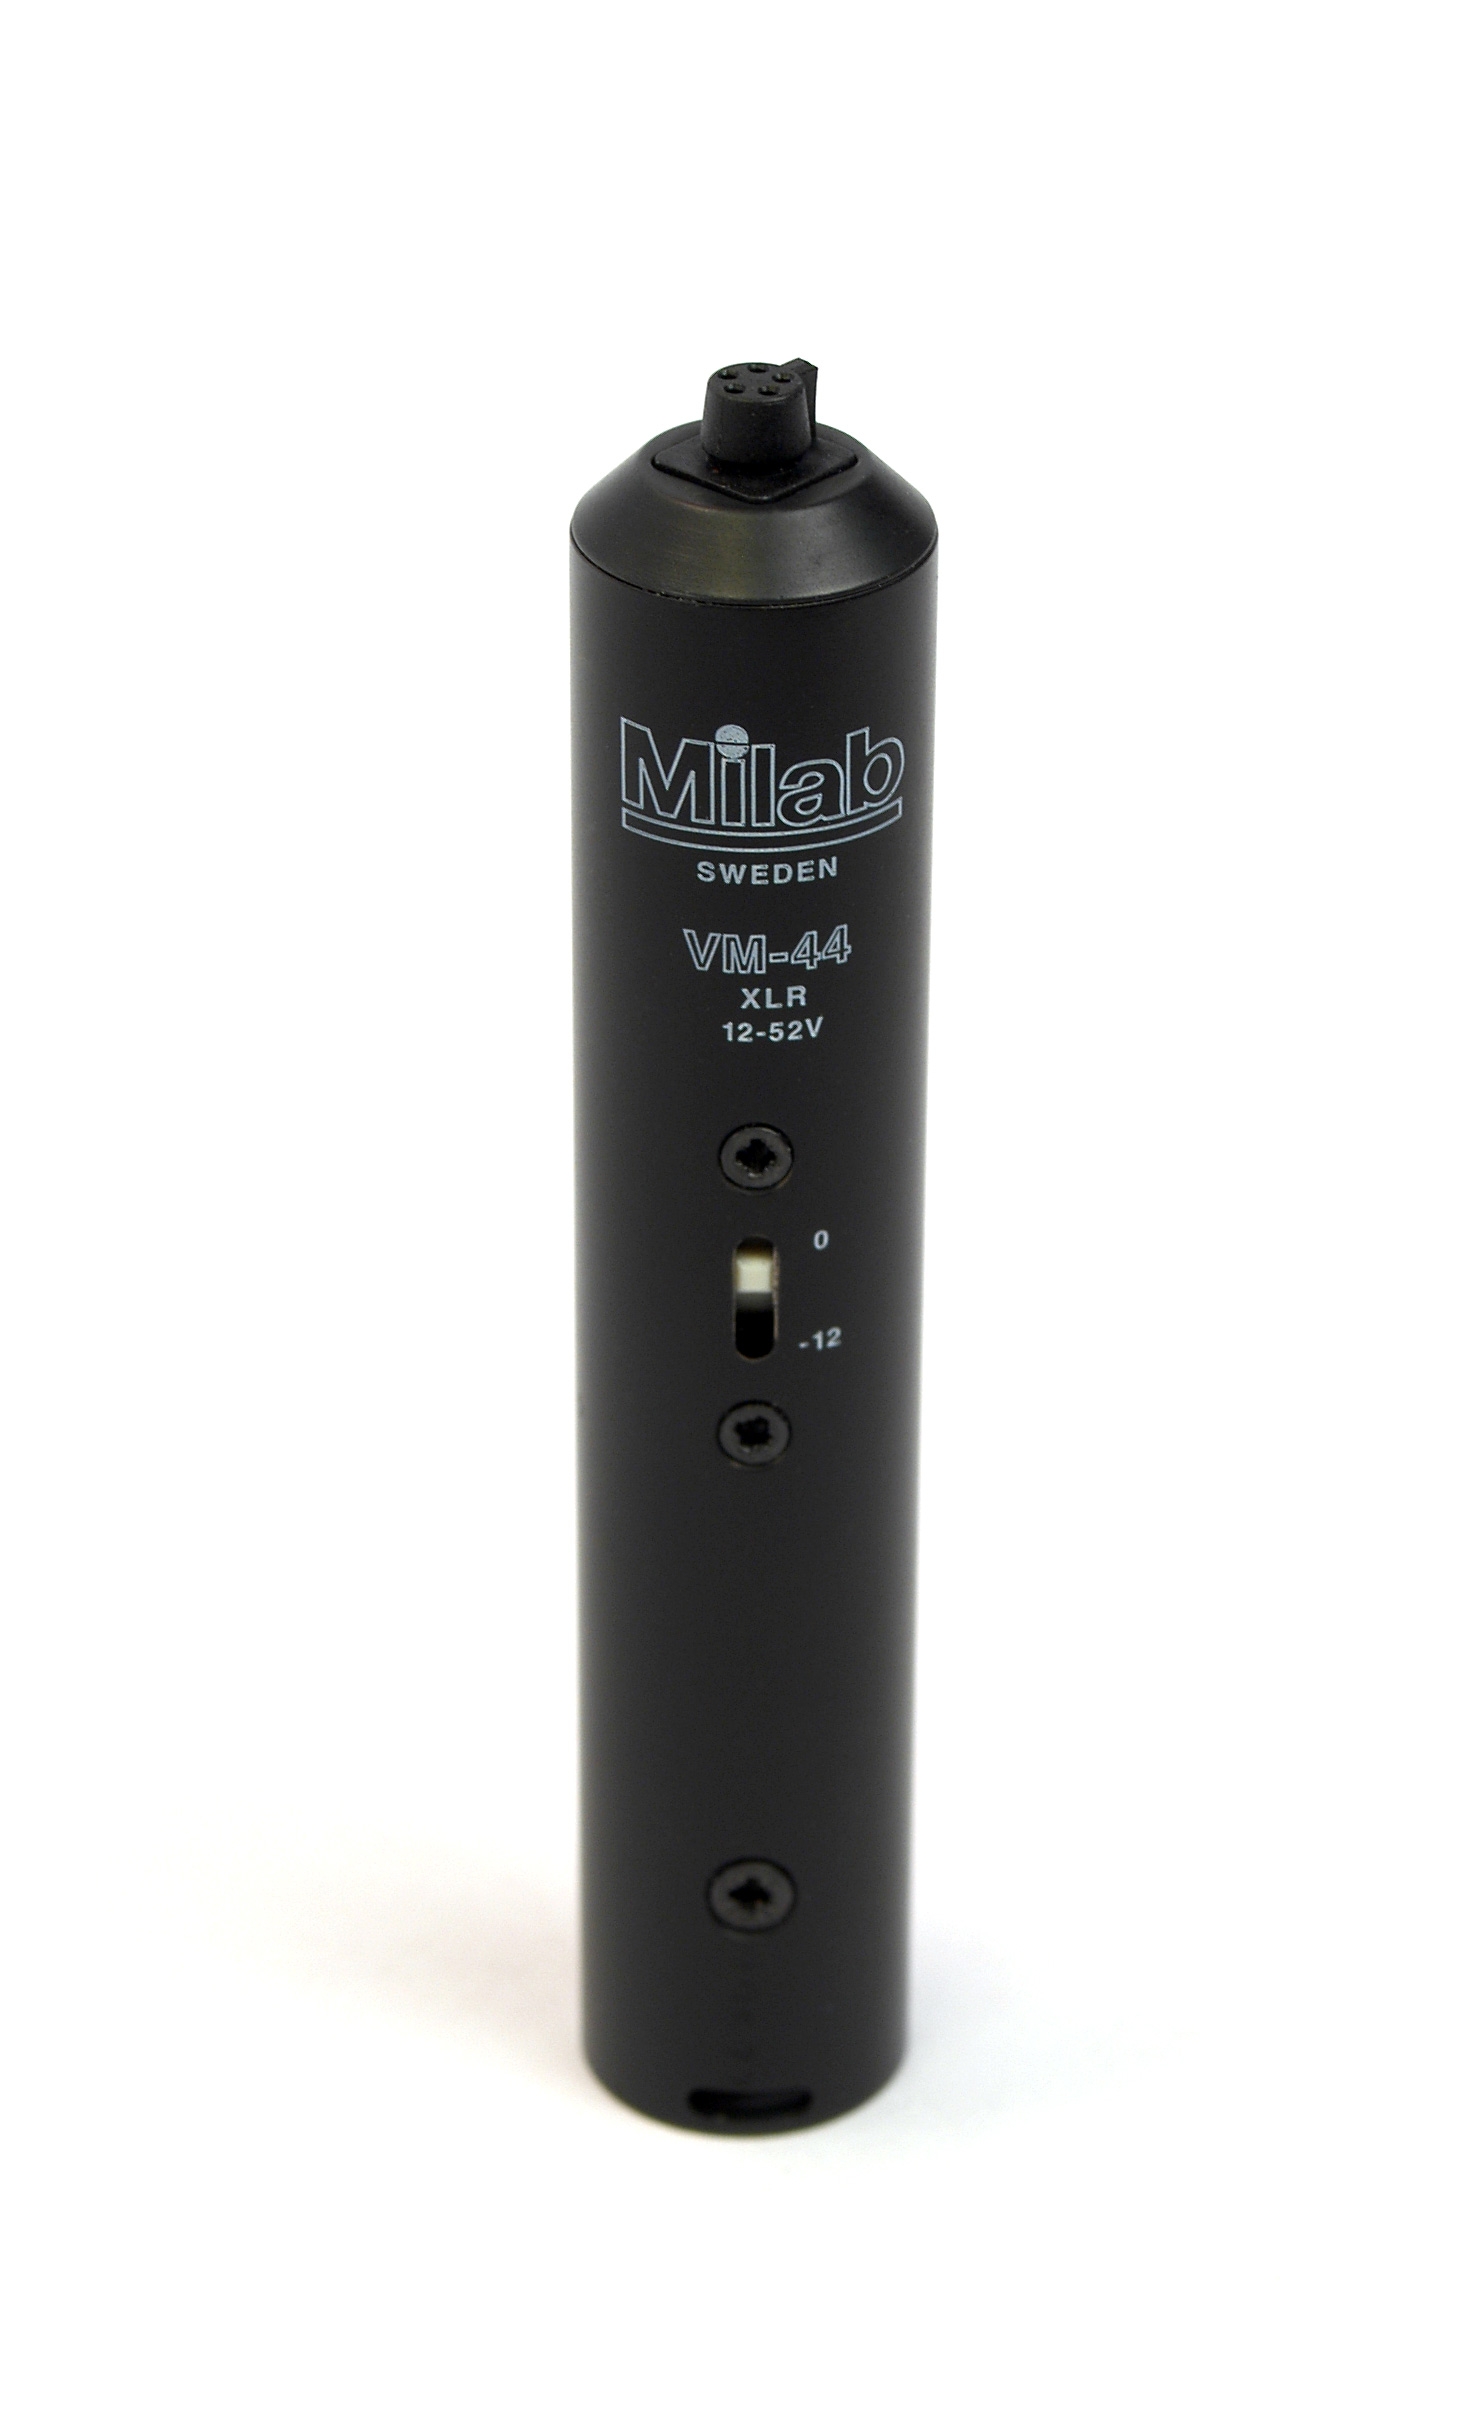 Milab VM-44 Link